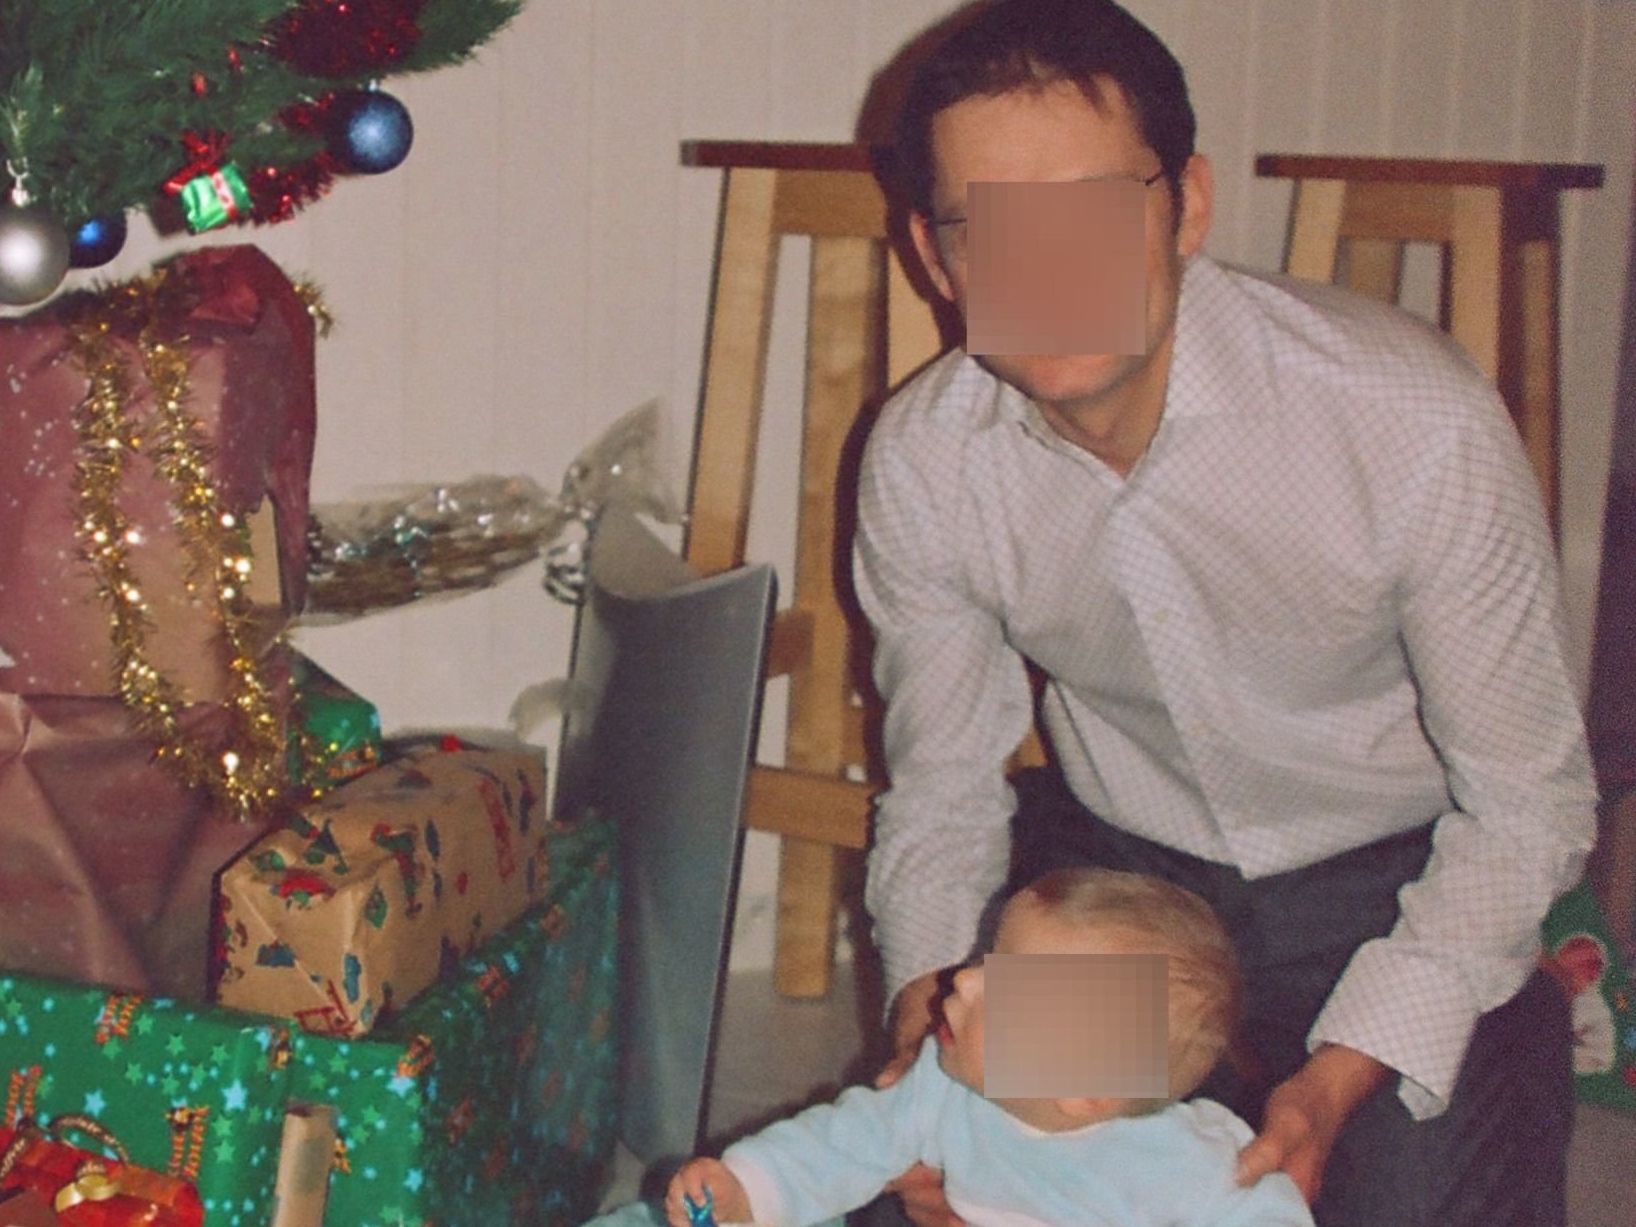 Les photos retrouvées à Tarbes (Hautes-Pyrénées) étaient celles d'un habitant d’Argelès-Gazost avec son fils, prises à Noël 2005. DR